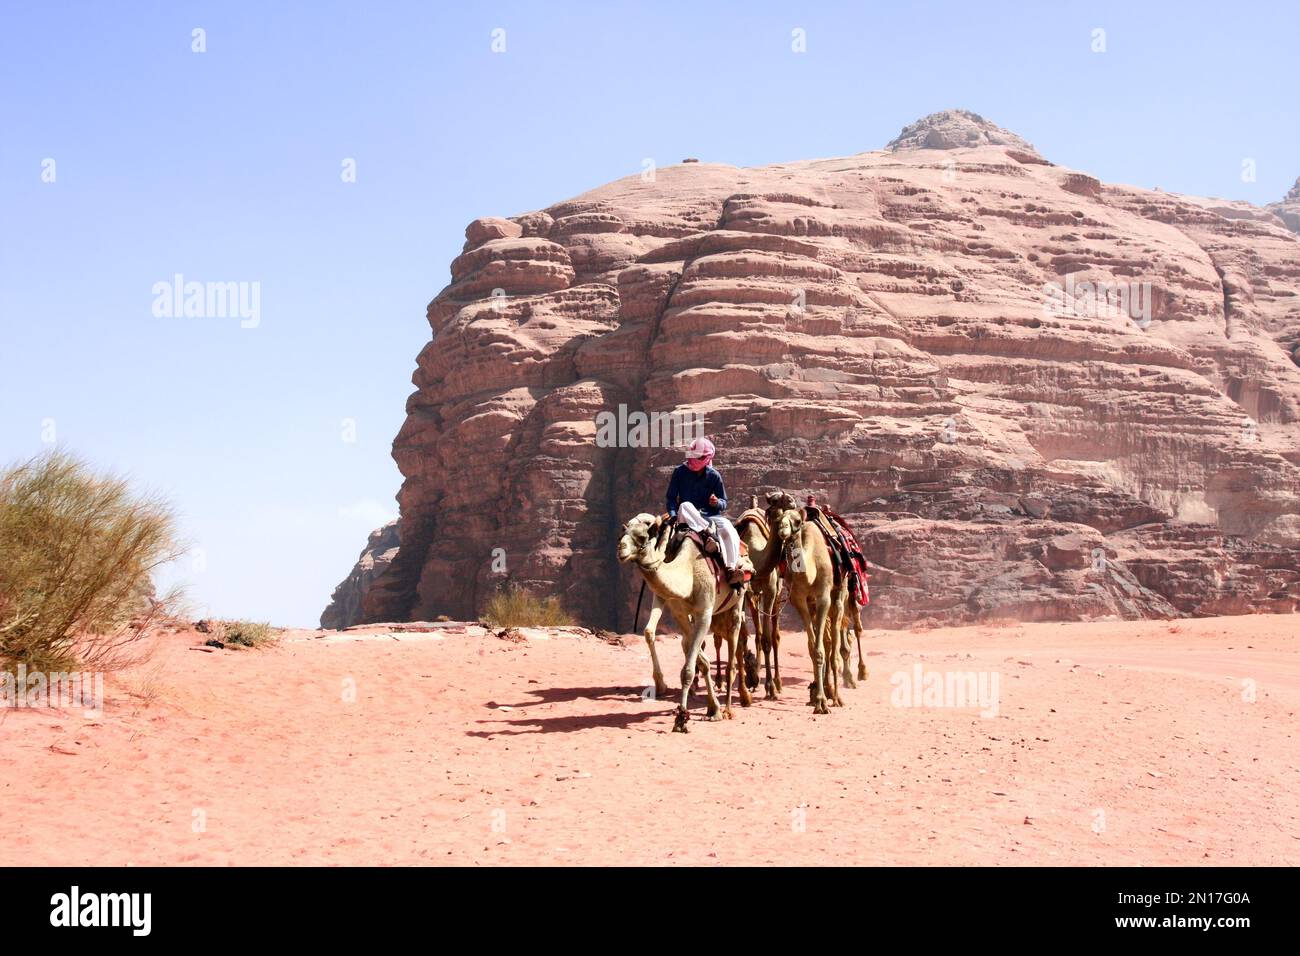 Bédouin avec caravane de chameaux, promenade dromadaire en tout-terrain sur le sable parmi les rochers dans le désert de Wadi Rum, Jordanie. Paysage désertique avec chameaux, sable rouge a Banque D'Images